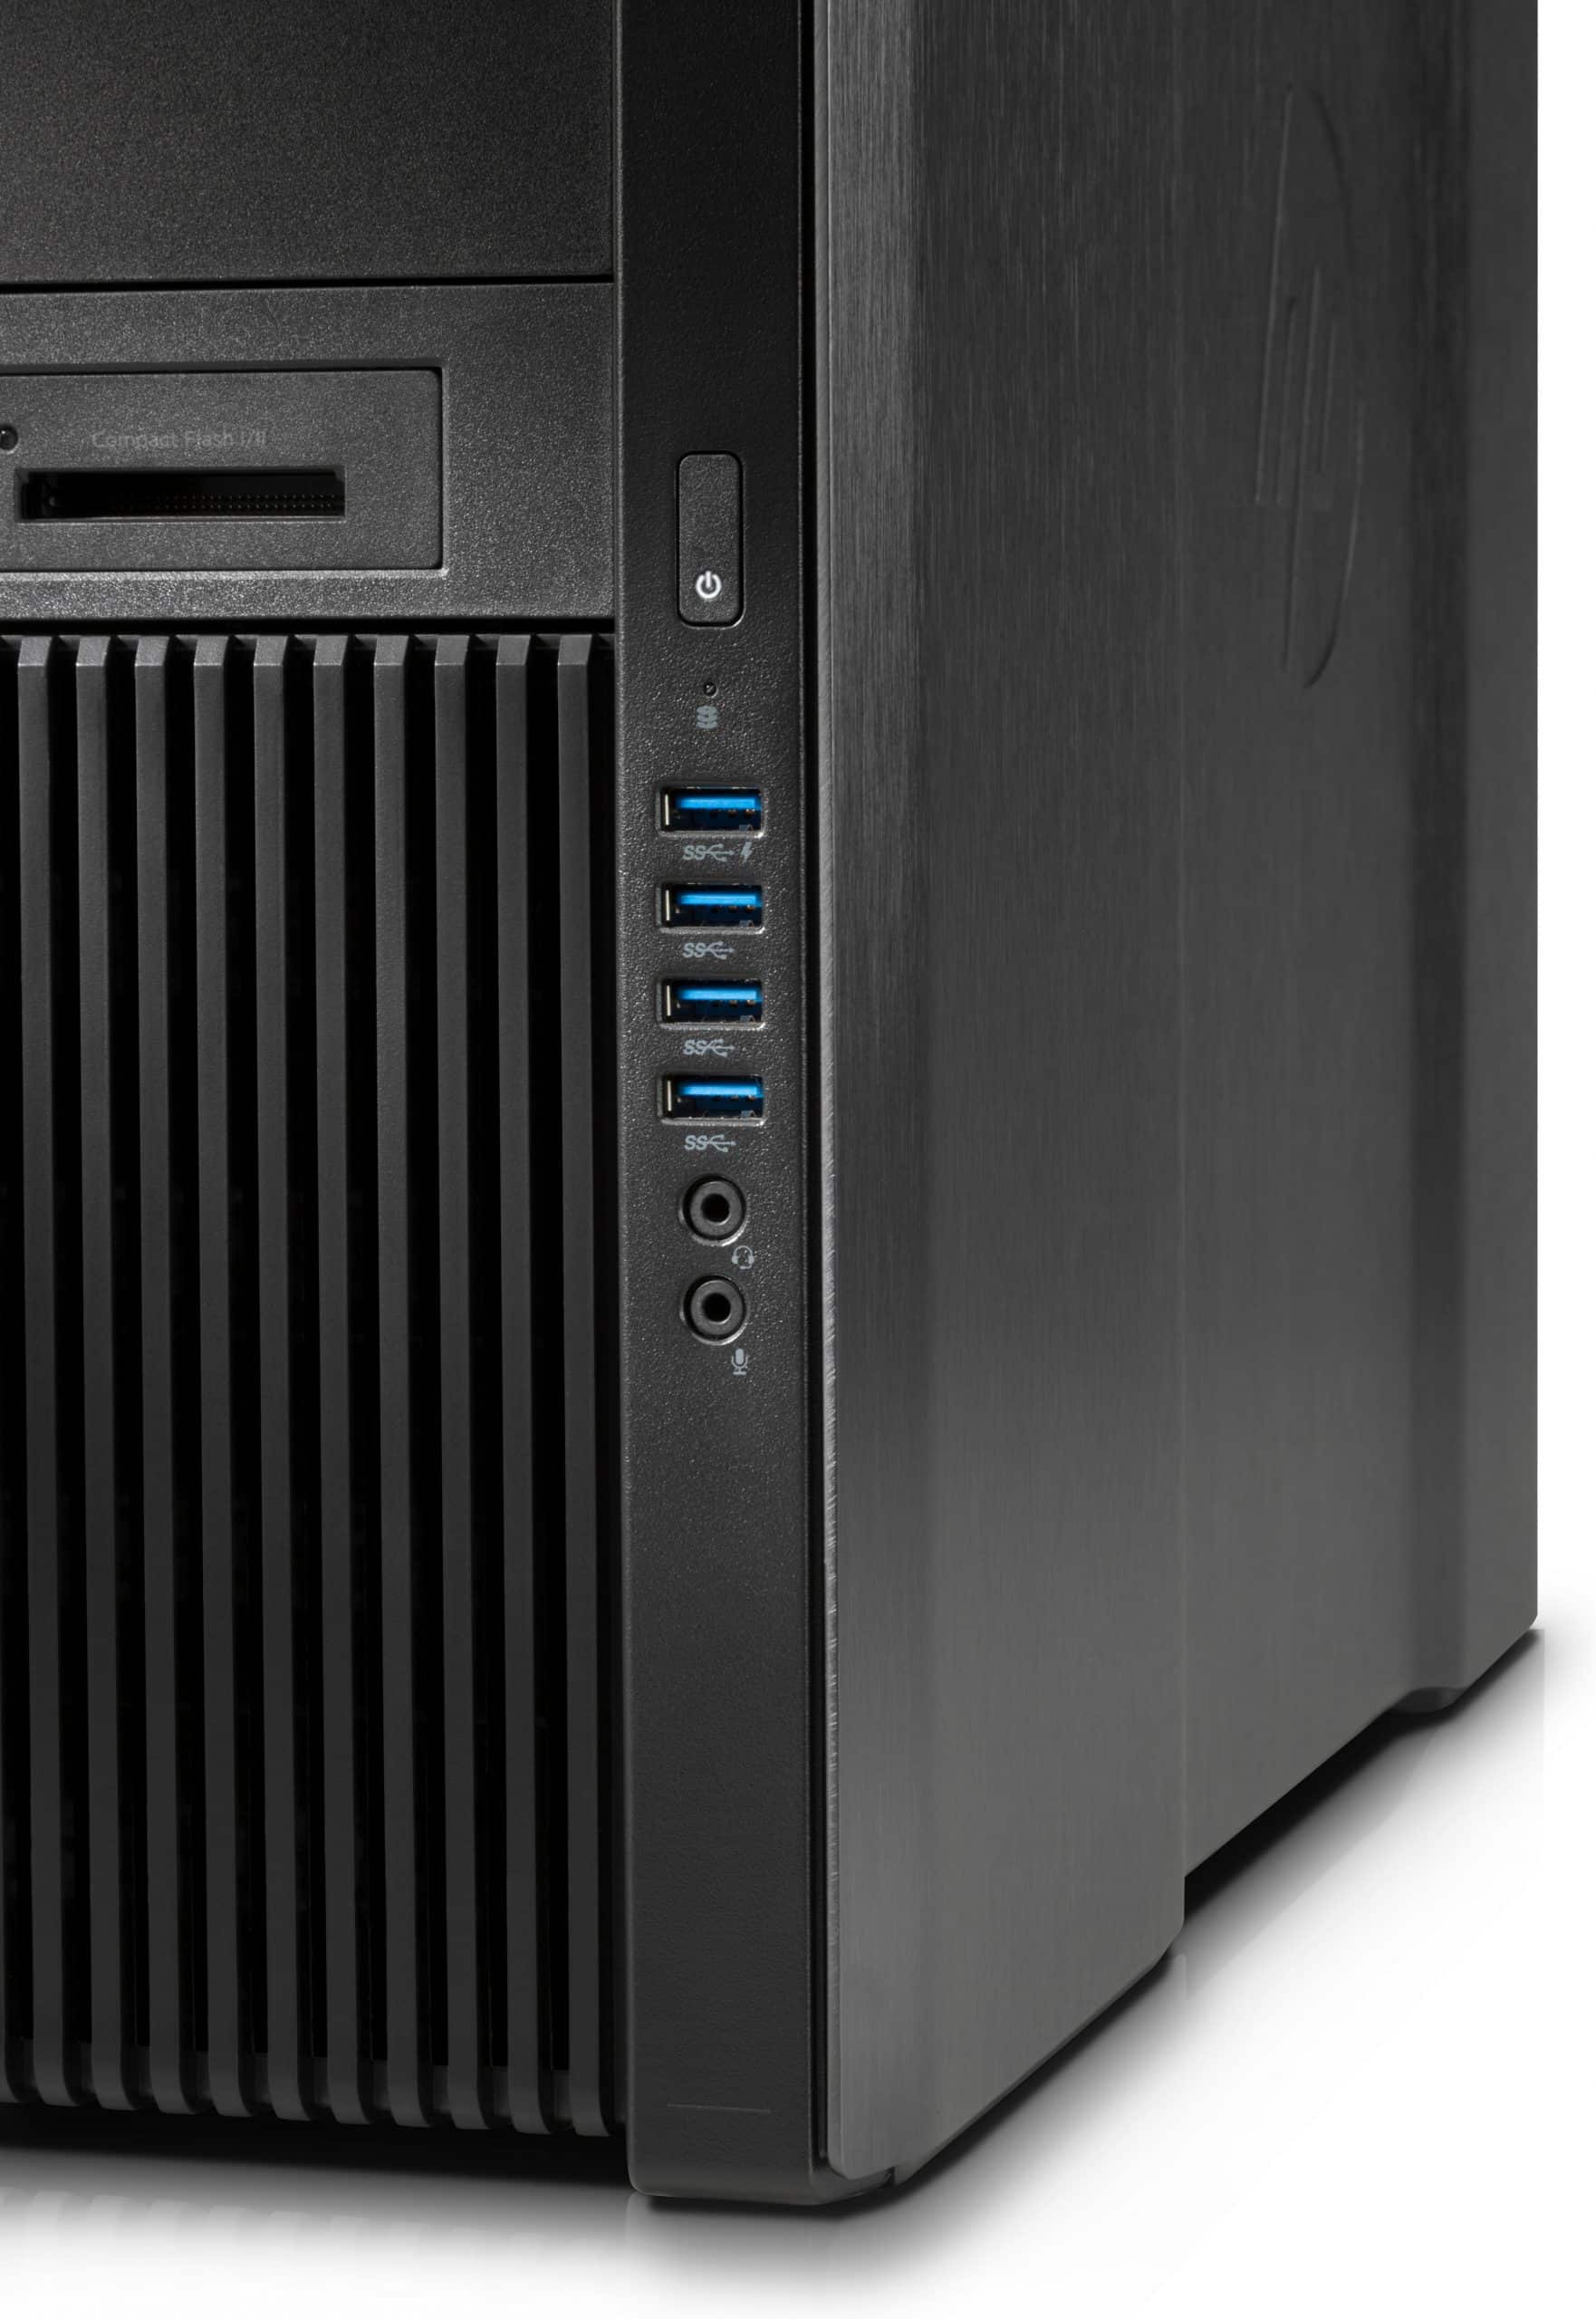 HP Z840 Workstation | Intel Xeon E5-2620 V3 6Cores | Ram 32Gb | SSD 480Gb + 12Tb Meccanici SAS | Nvidia Quadro P2000 | Windows 11 Pro Potenza di calcolo per tutti gli usi